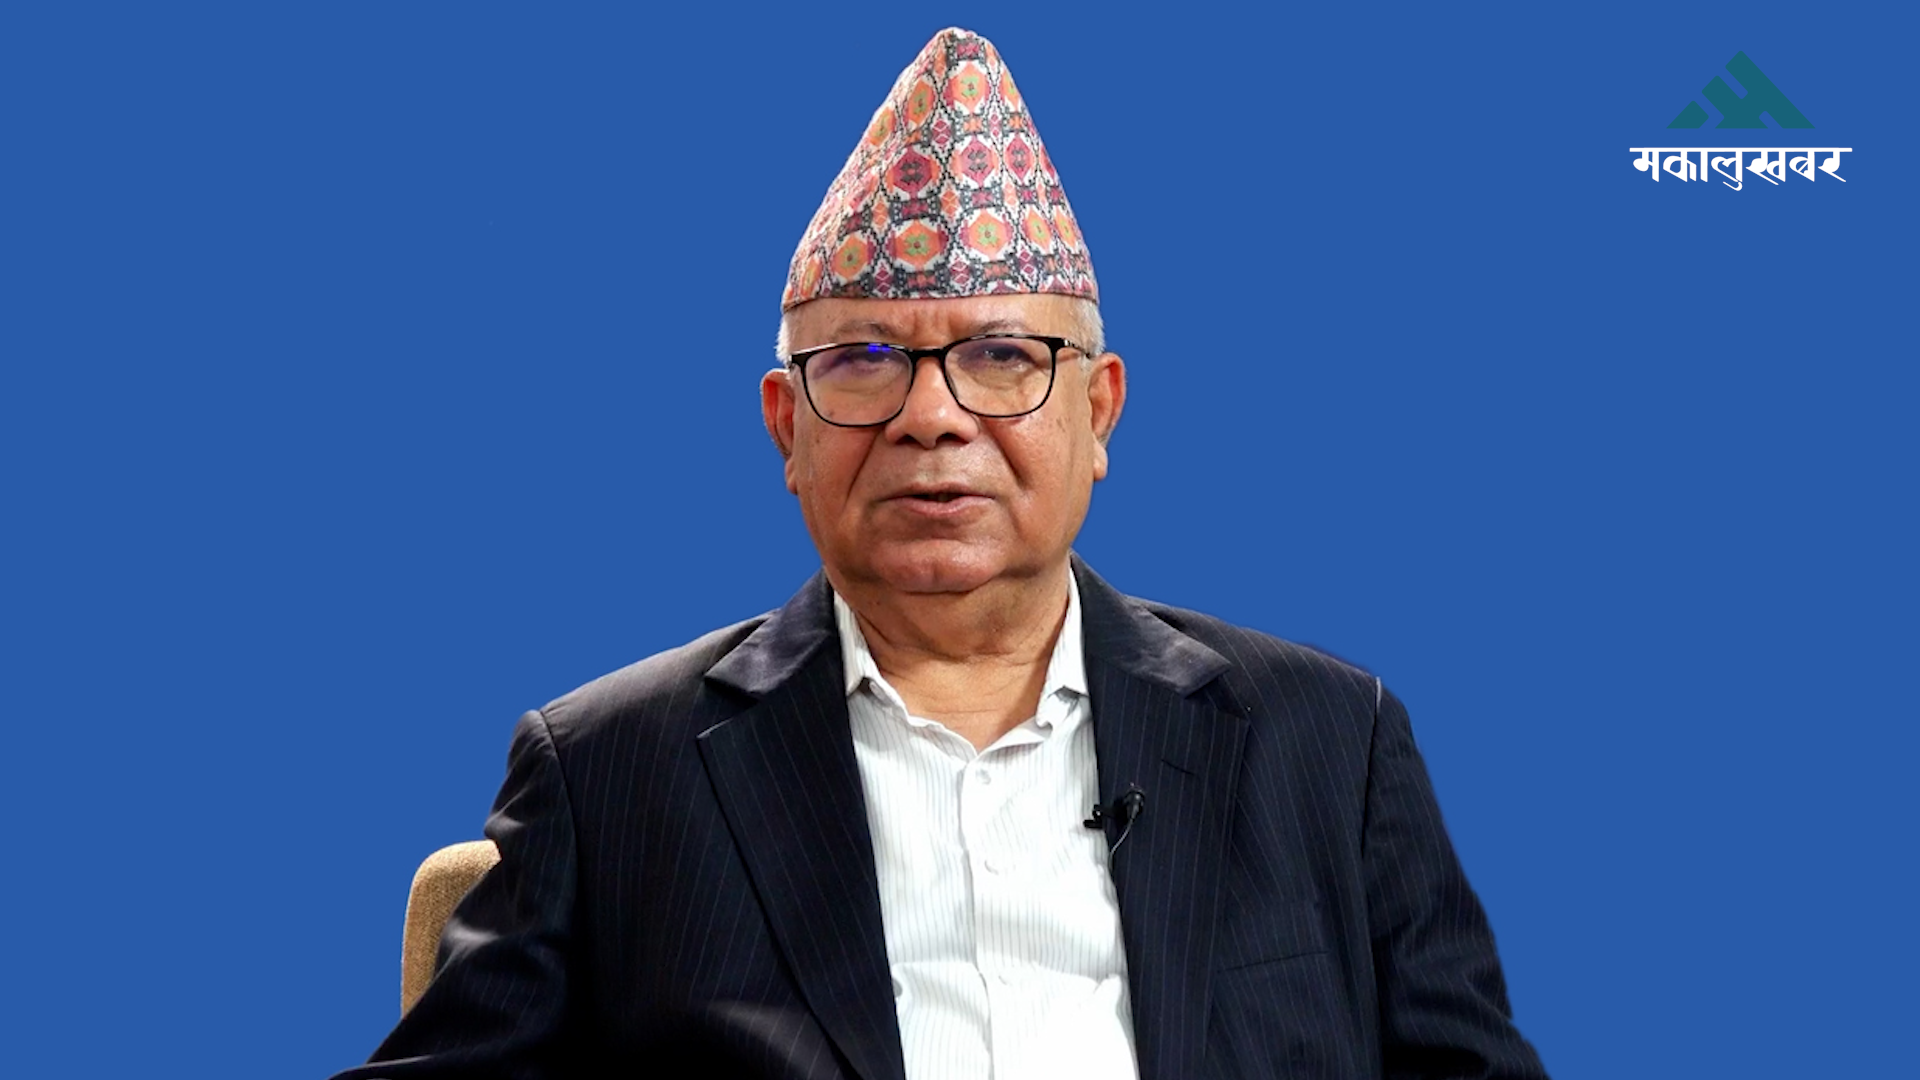 मेरो लागि पद ठूलो कुरा होइन, प्रधानमन्त्री बन्ने सोच छैन : माधव नेपाल (अन्तर्वार्ता)